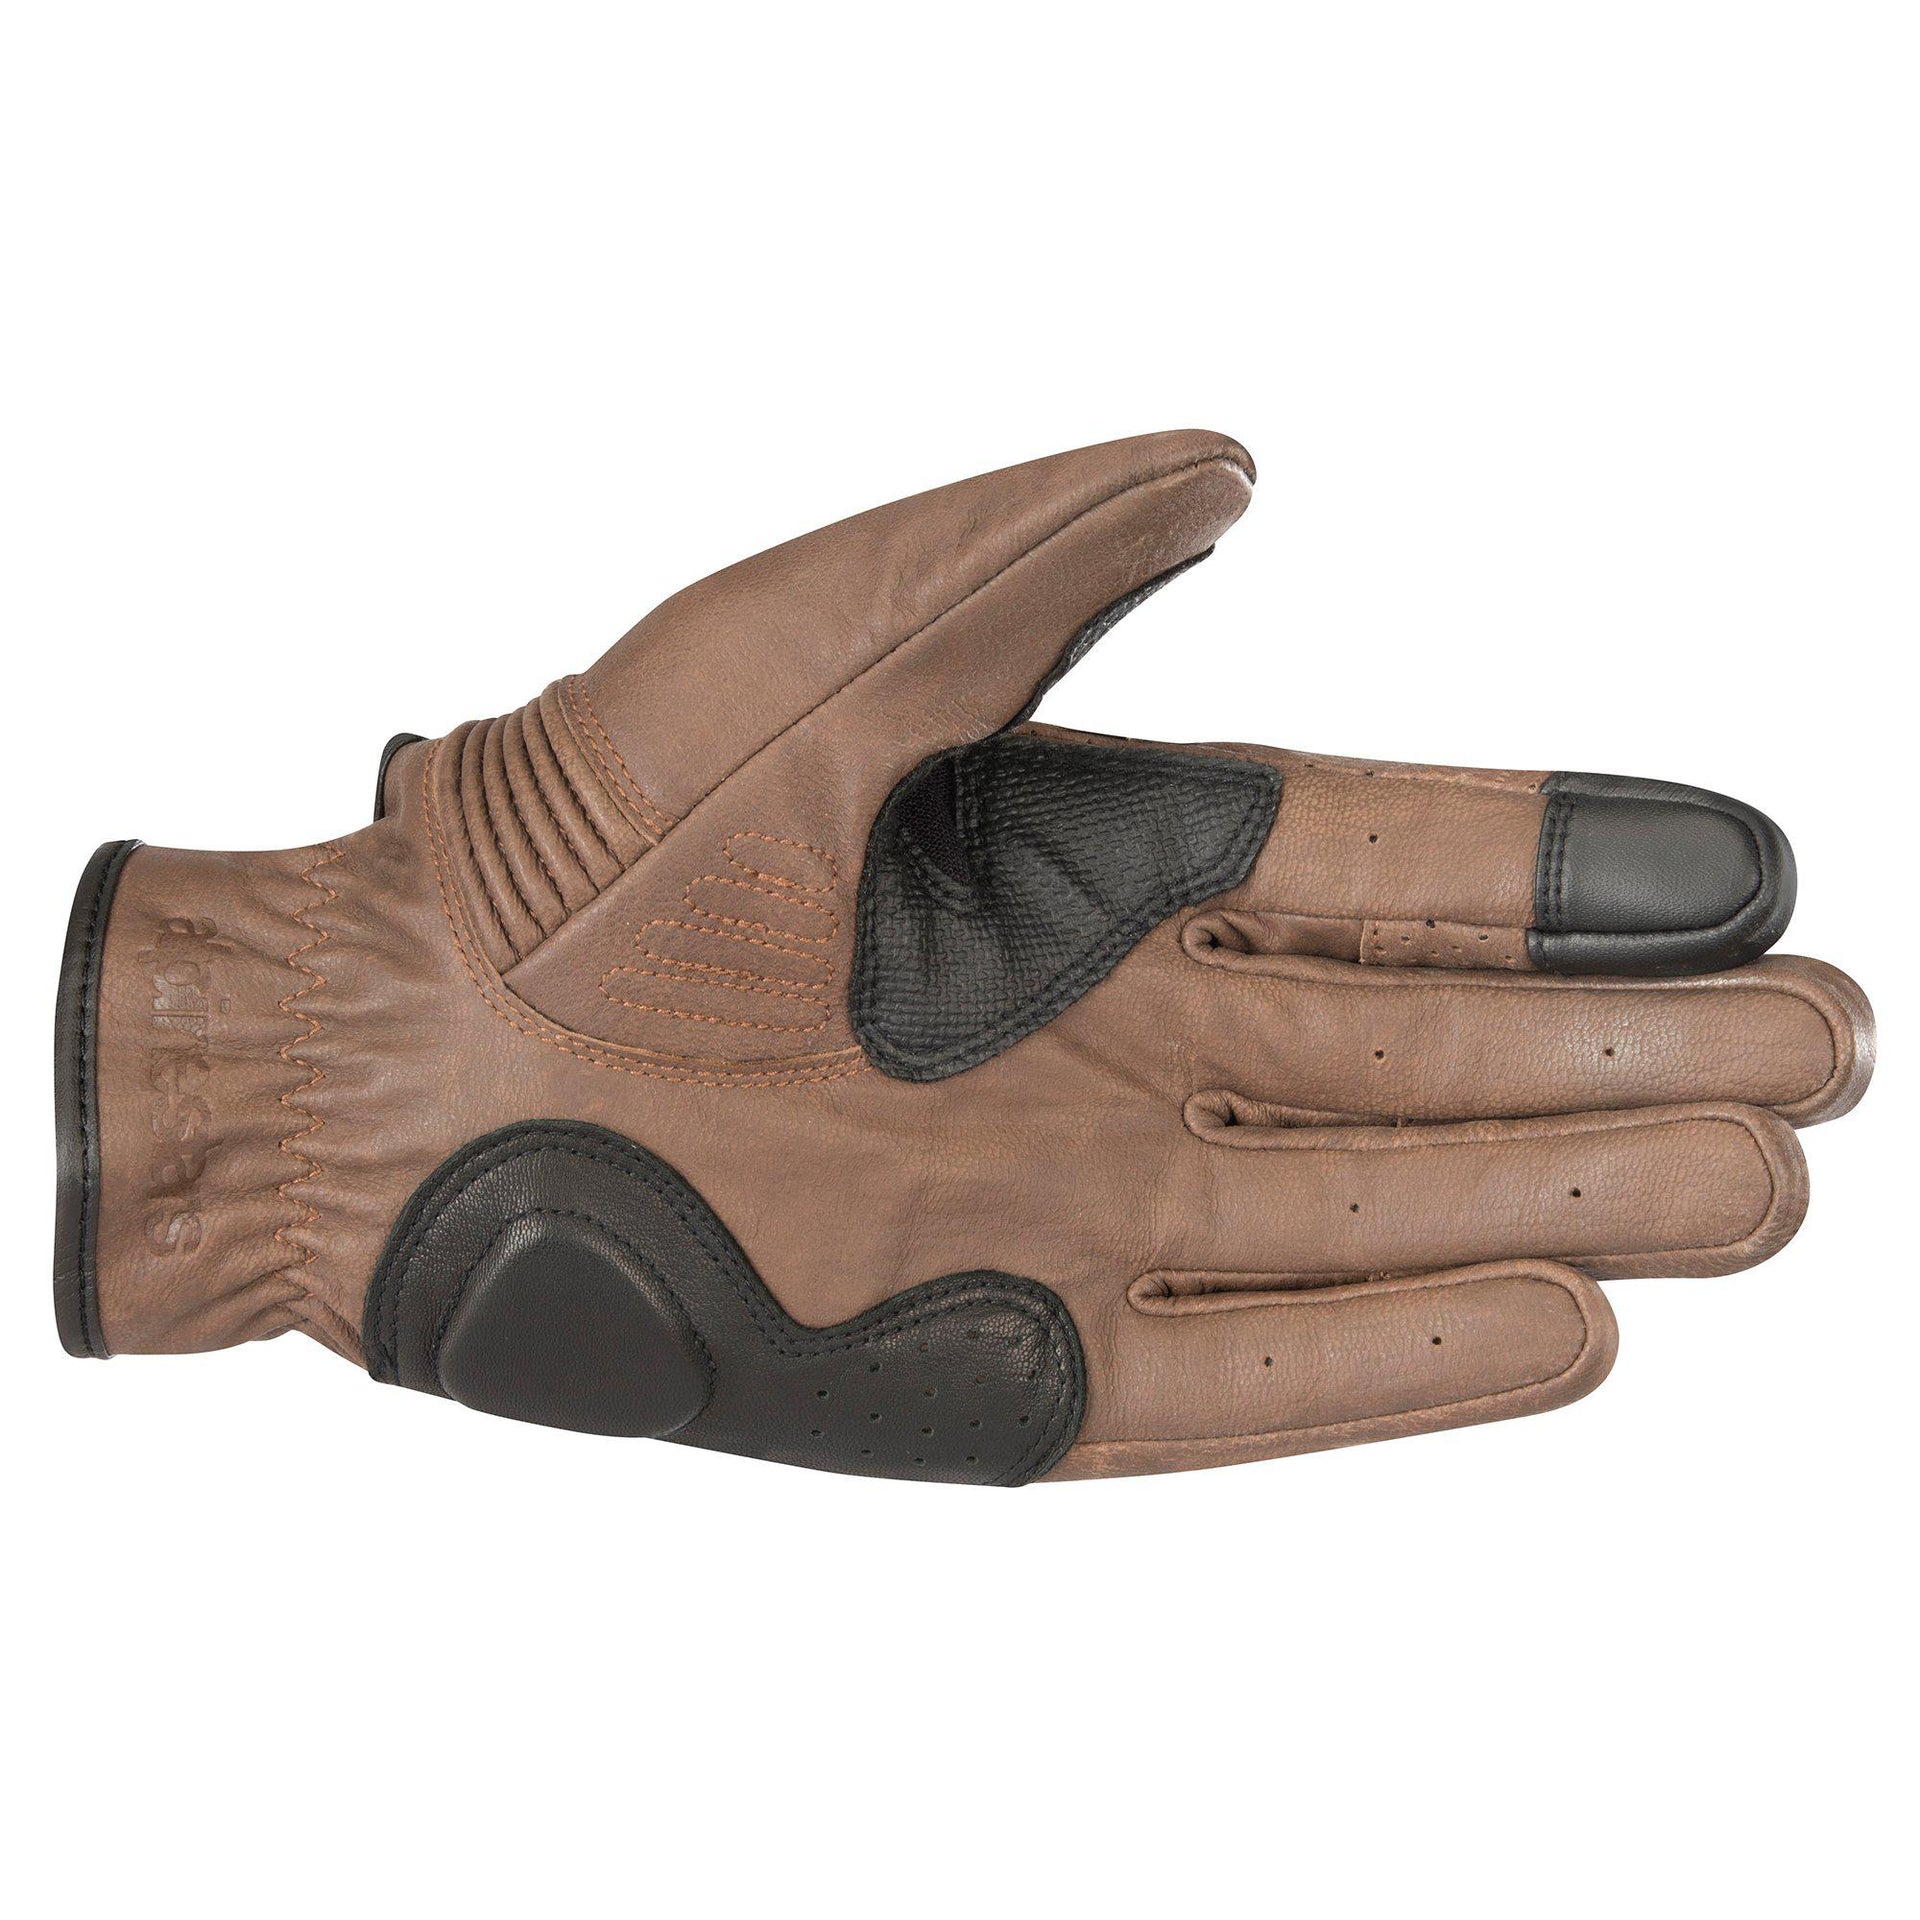 Alpinestars - Crazy Eight Gloves